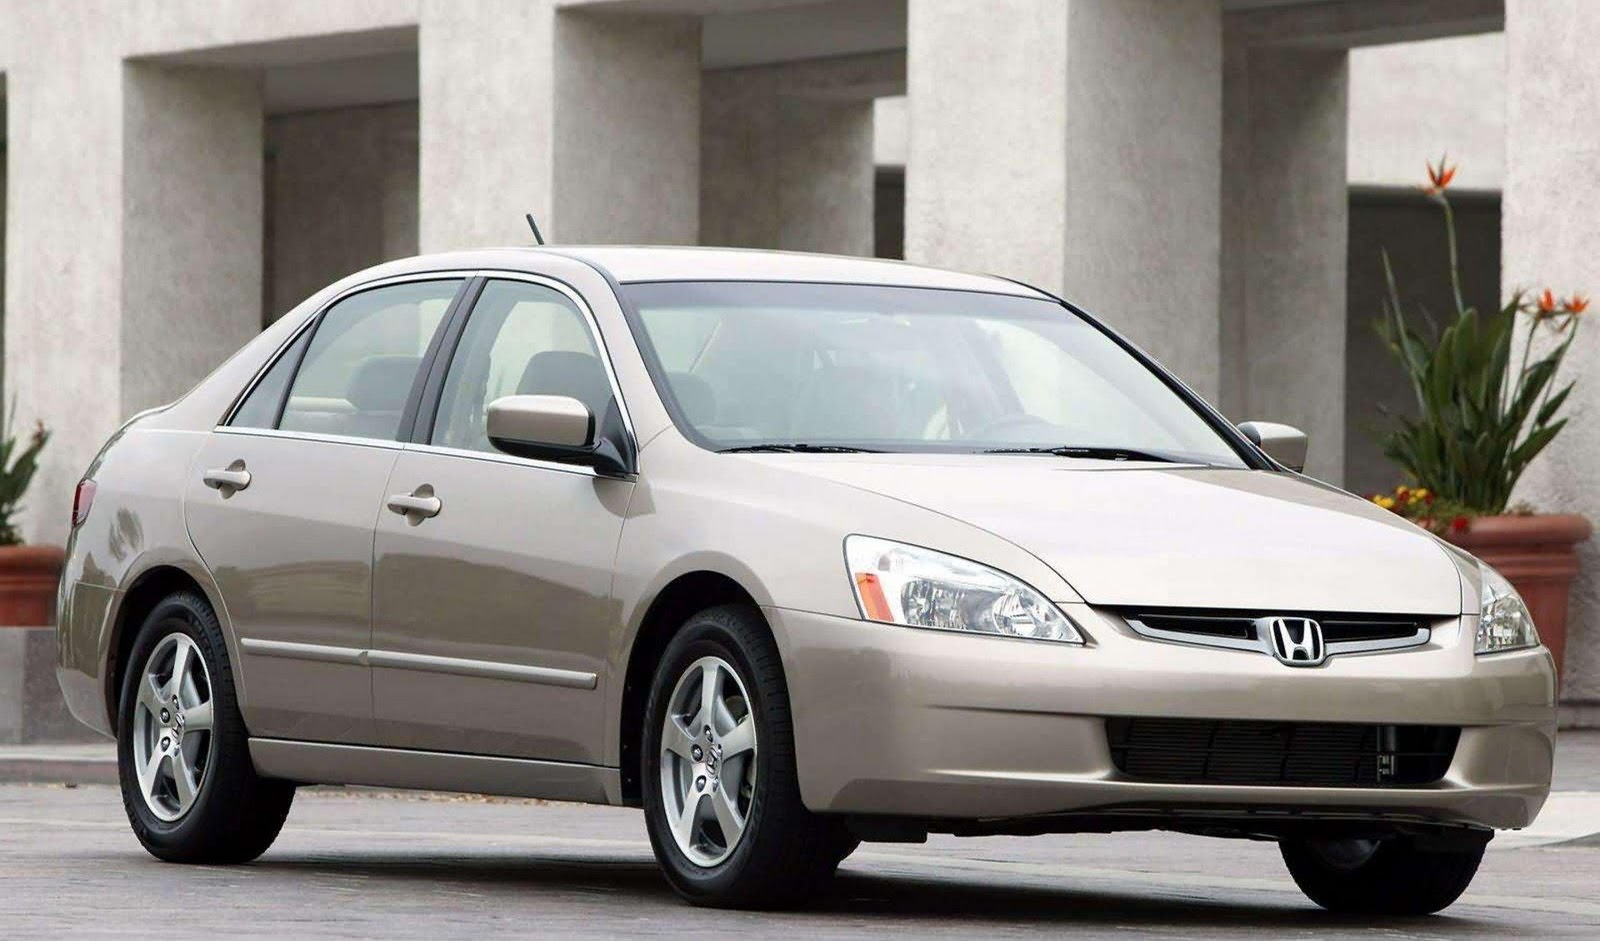 2005 Honda accord hybrid transmission problems #3